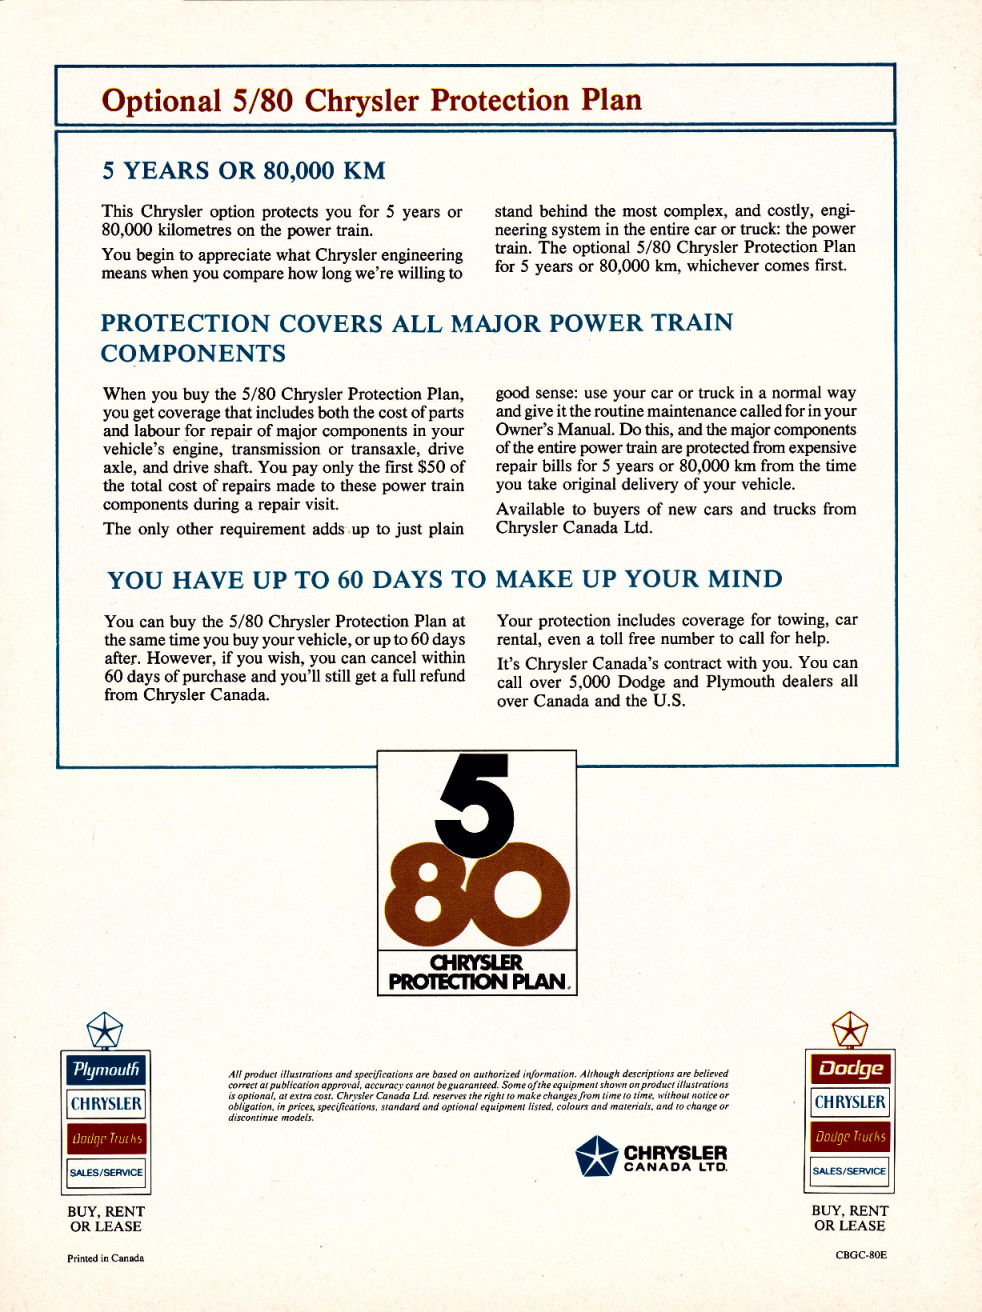 n_1980 Chrysler Buyer's Guide (Cdn)-12.jpg